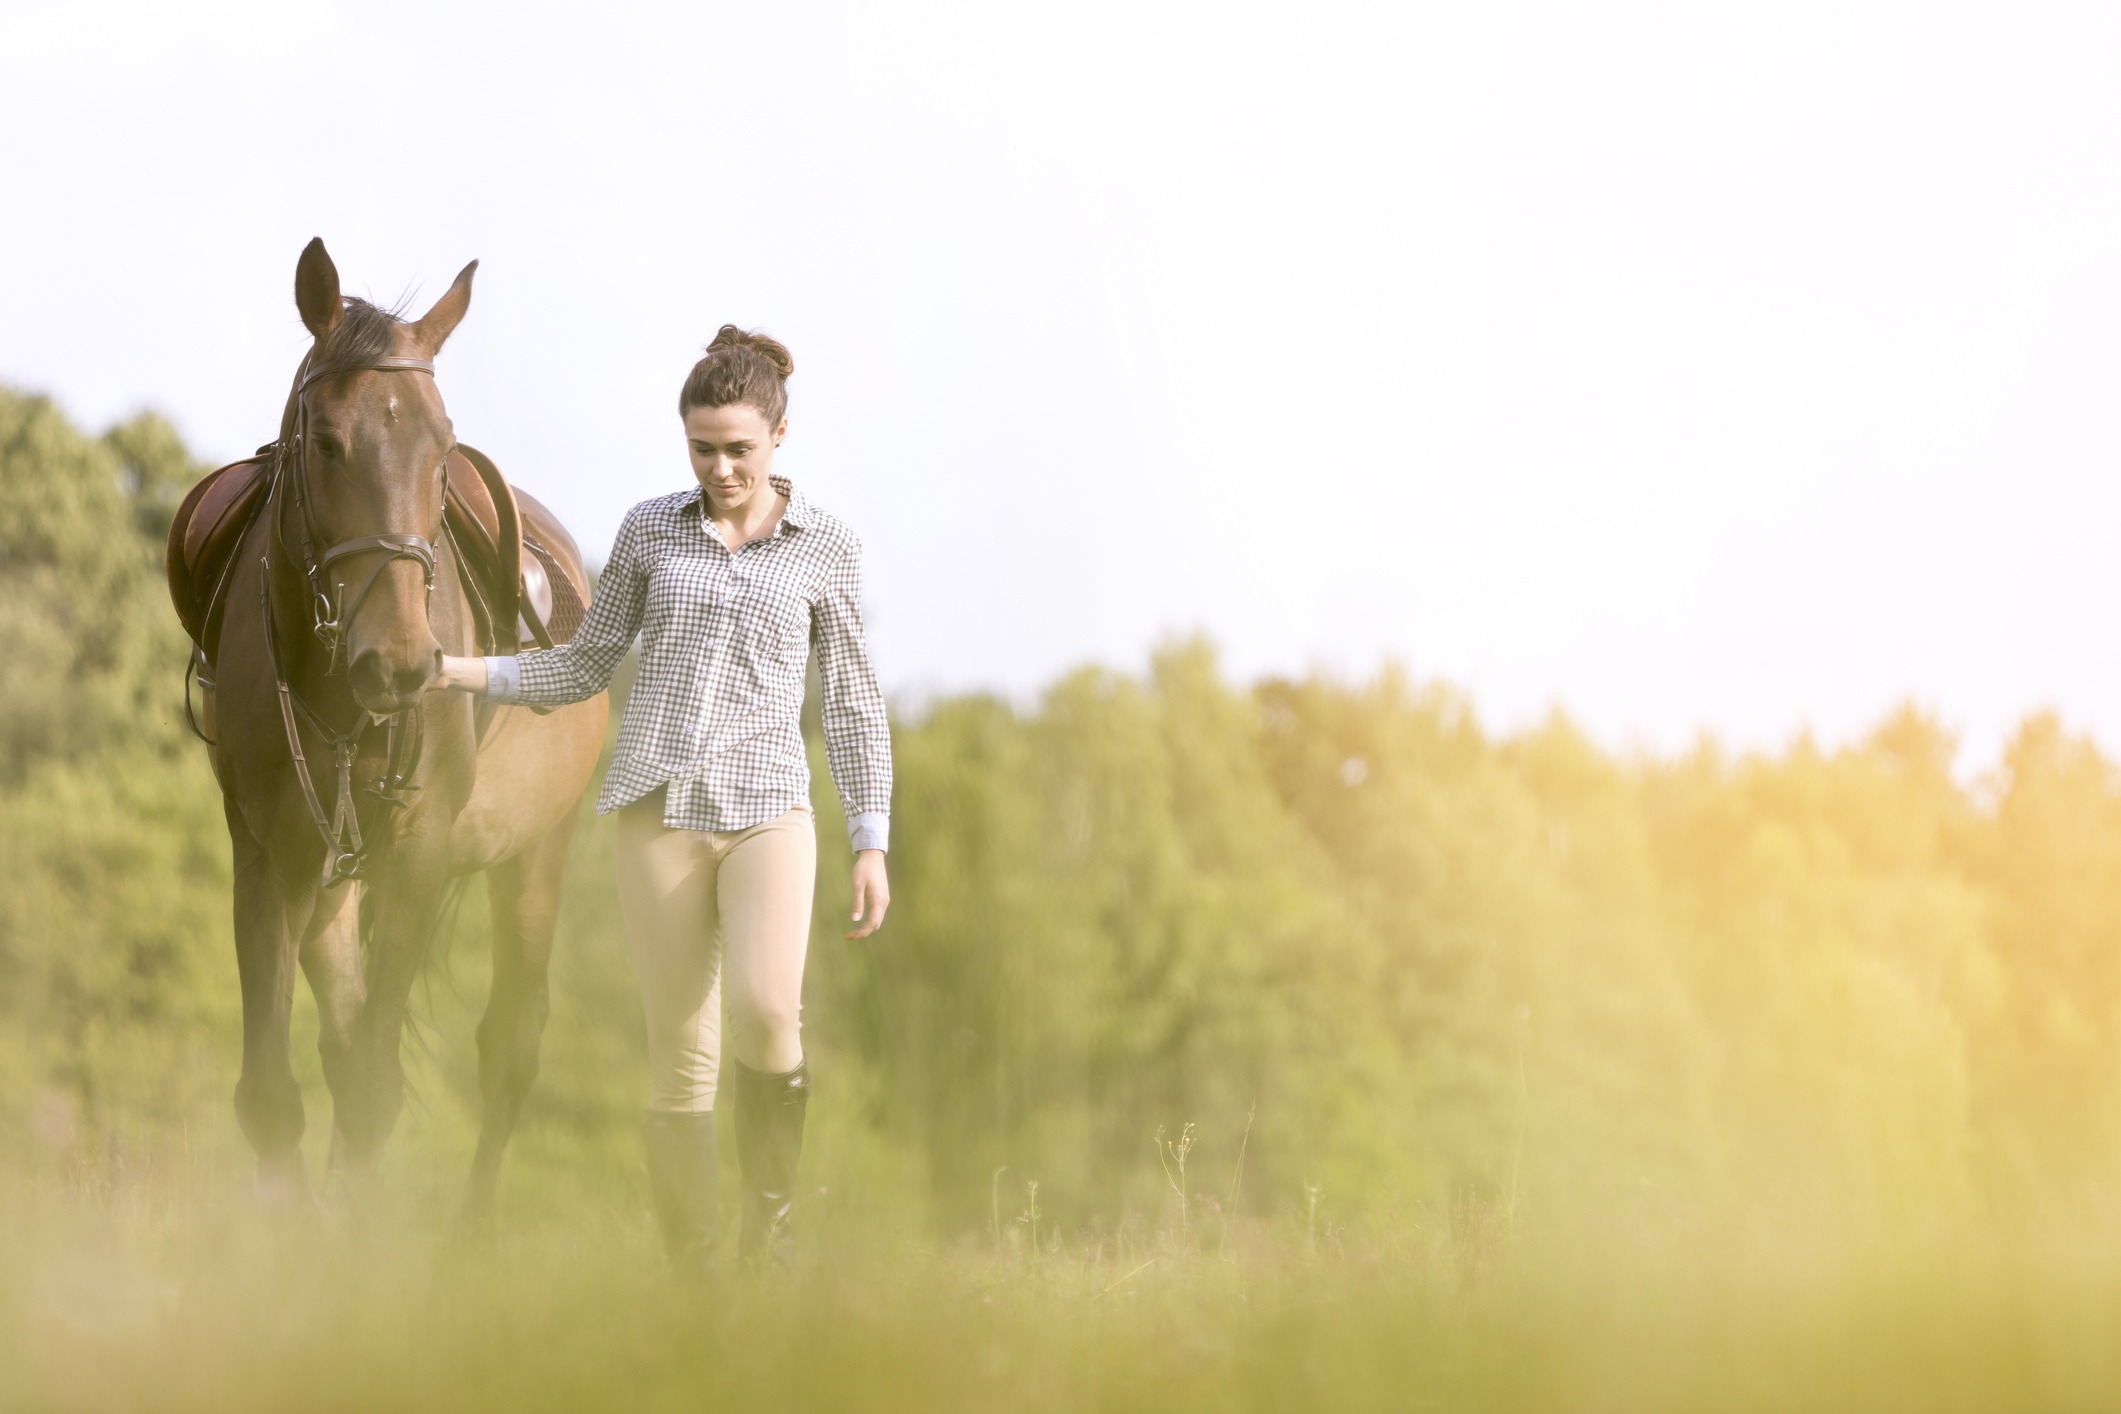 Woman walking horse in rural field